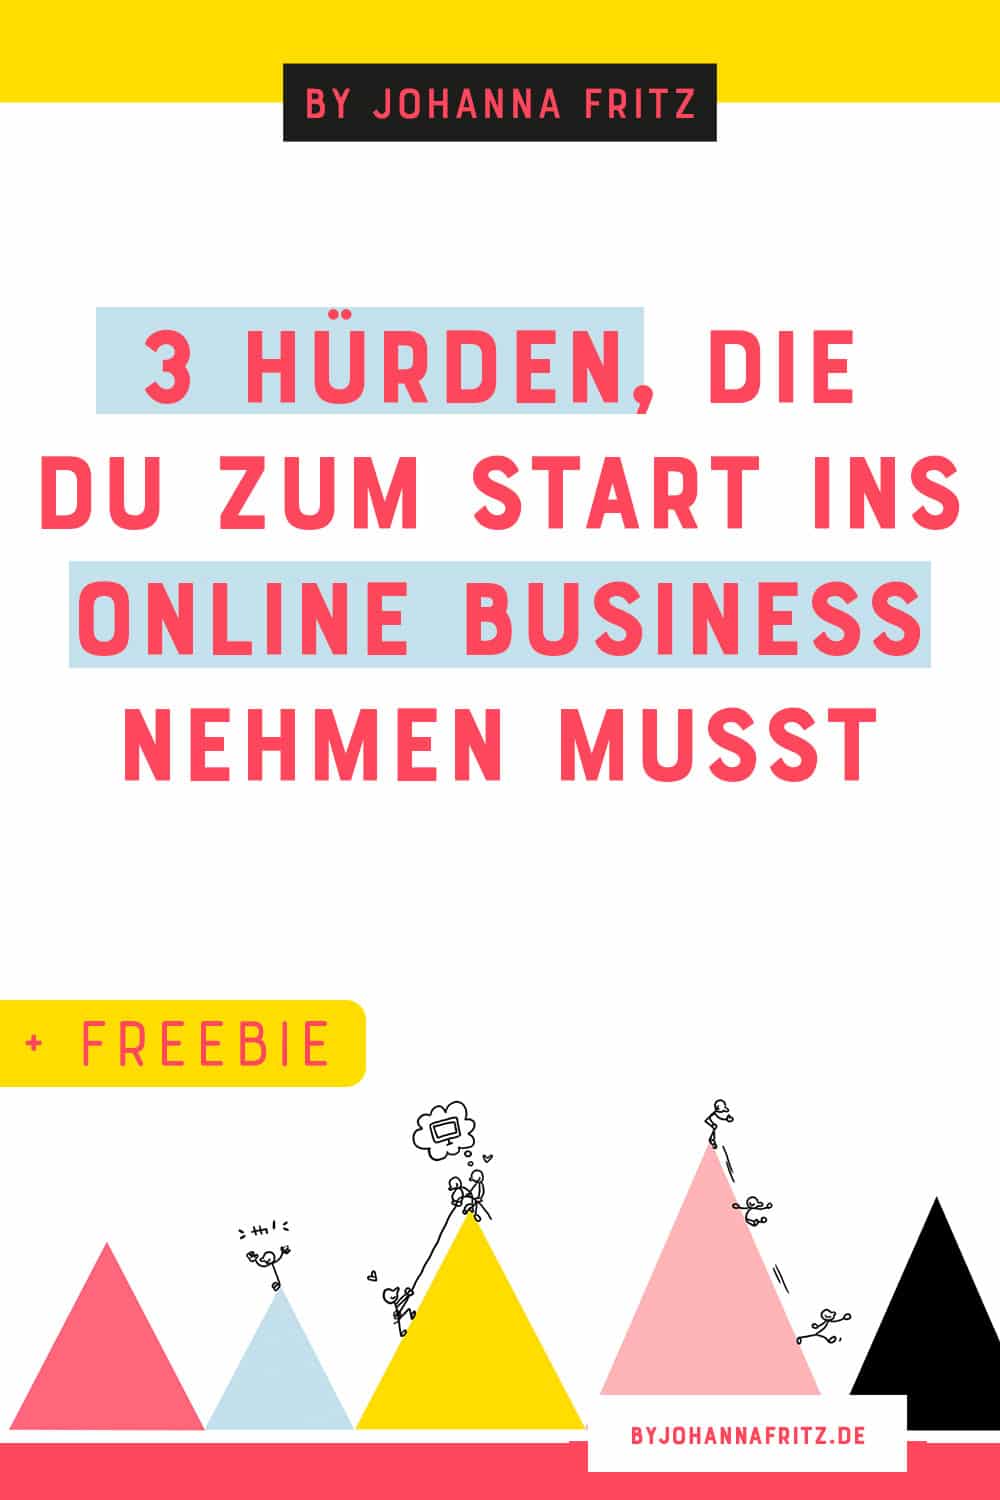 Huerden beim Start in dein Online Business - Diese Technik brauchst du zum Start wirklich + Freebie - By Johanna Fritz